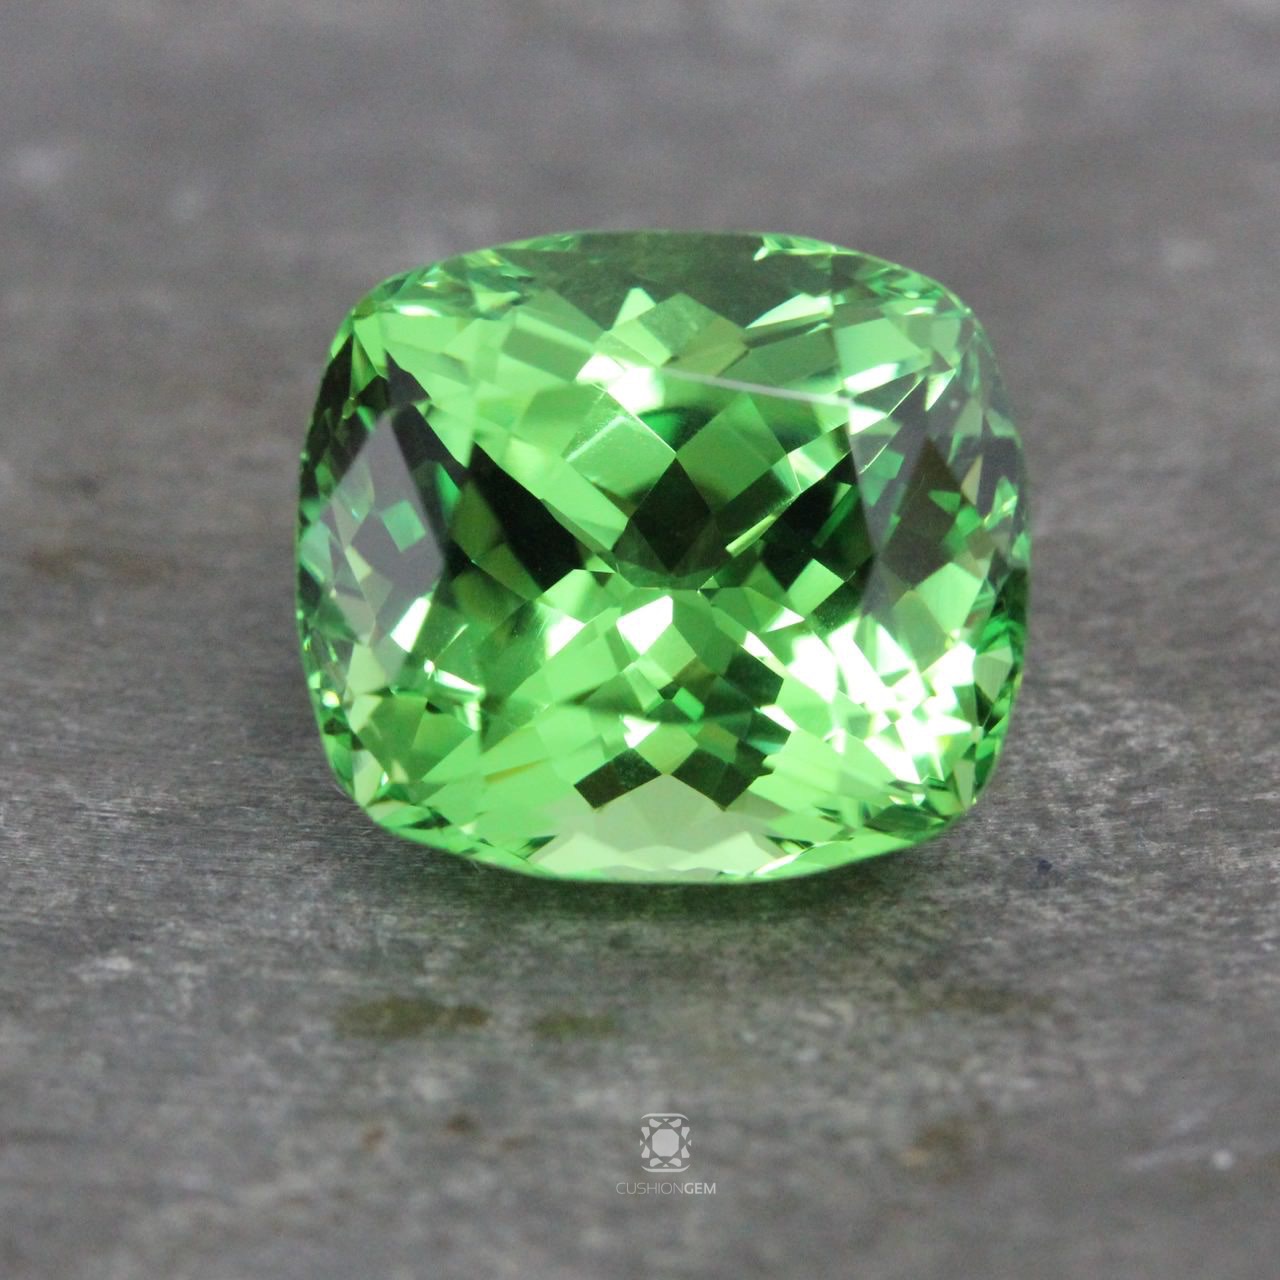 An 11 carat mint green Tsavorite